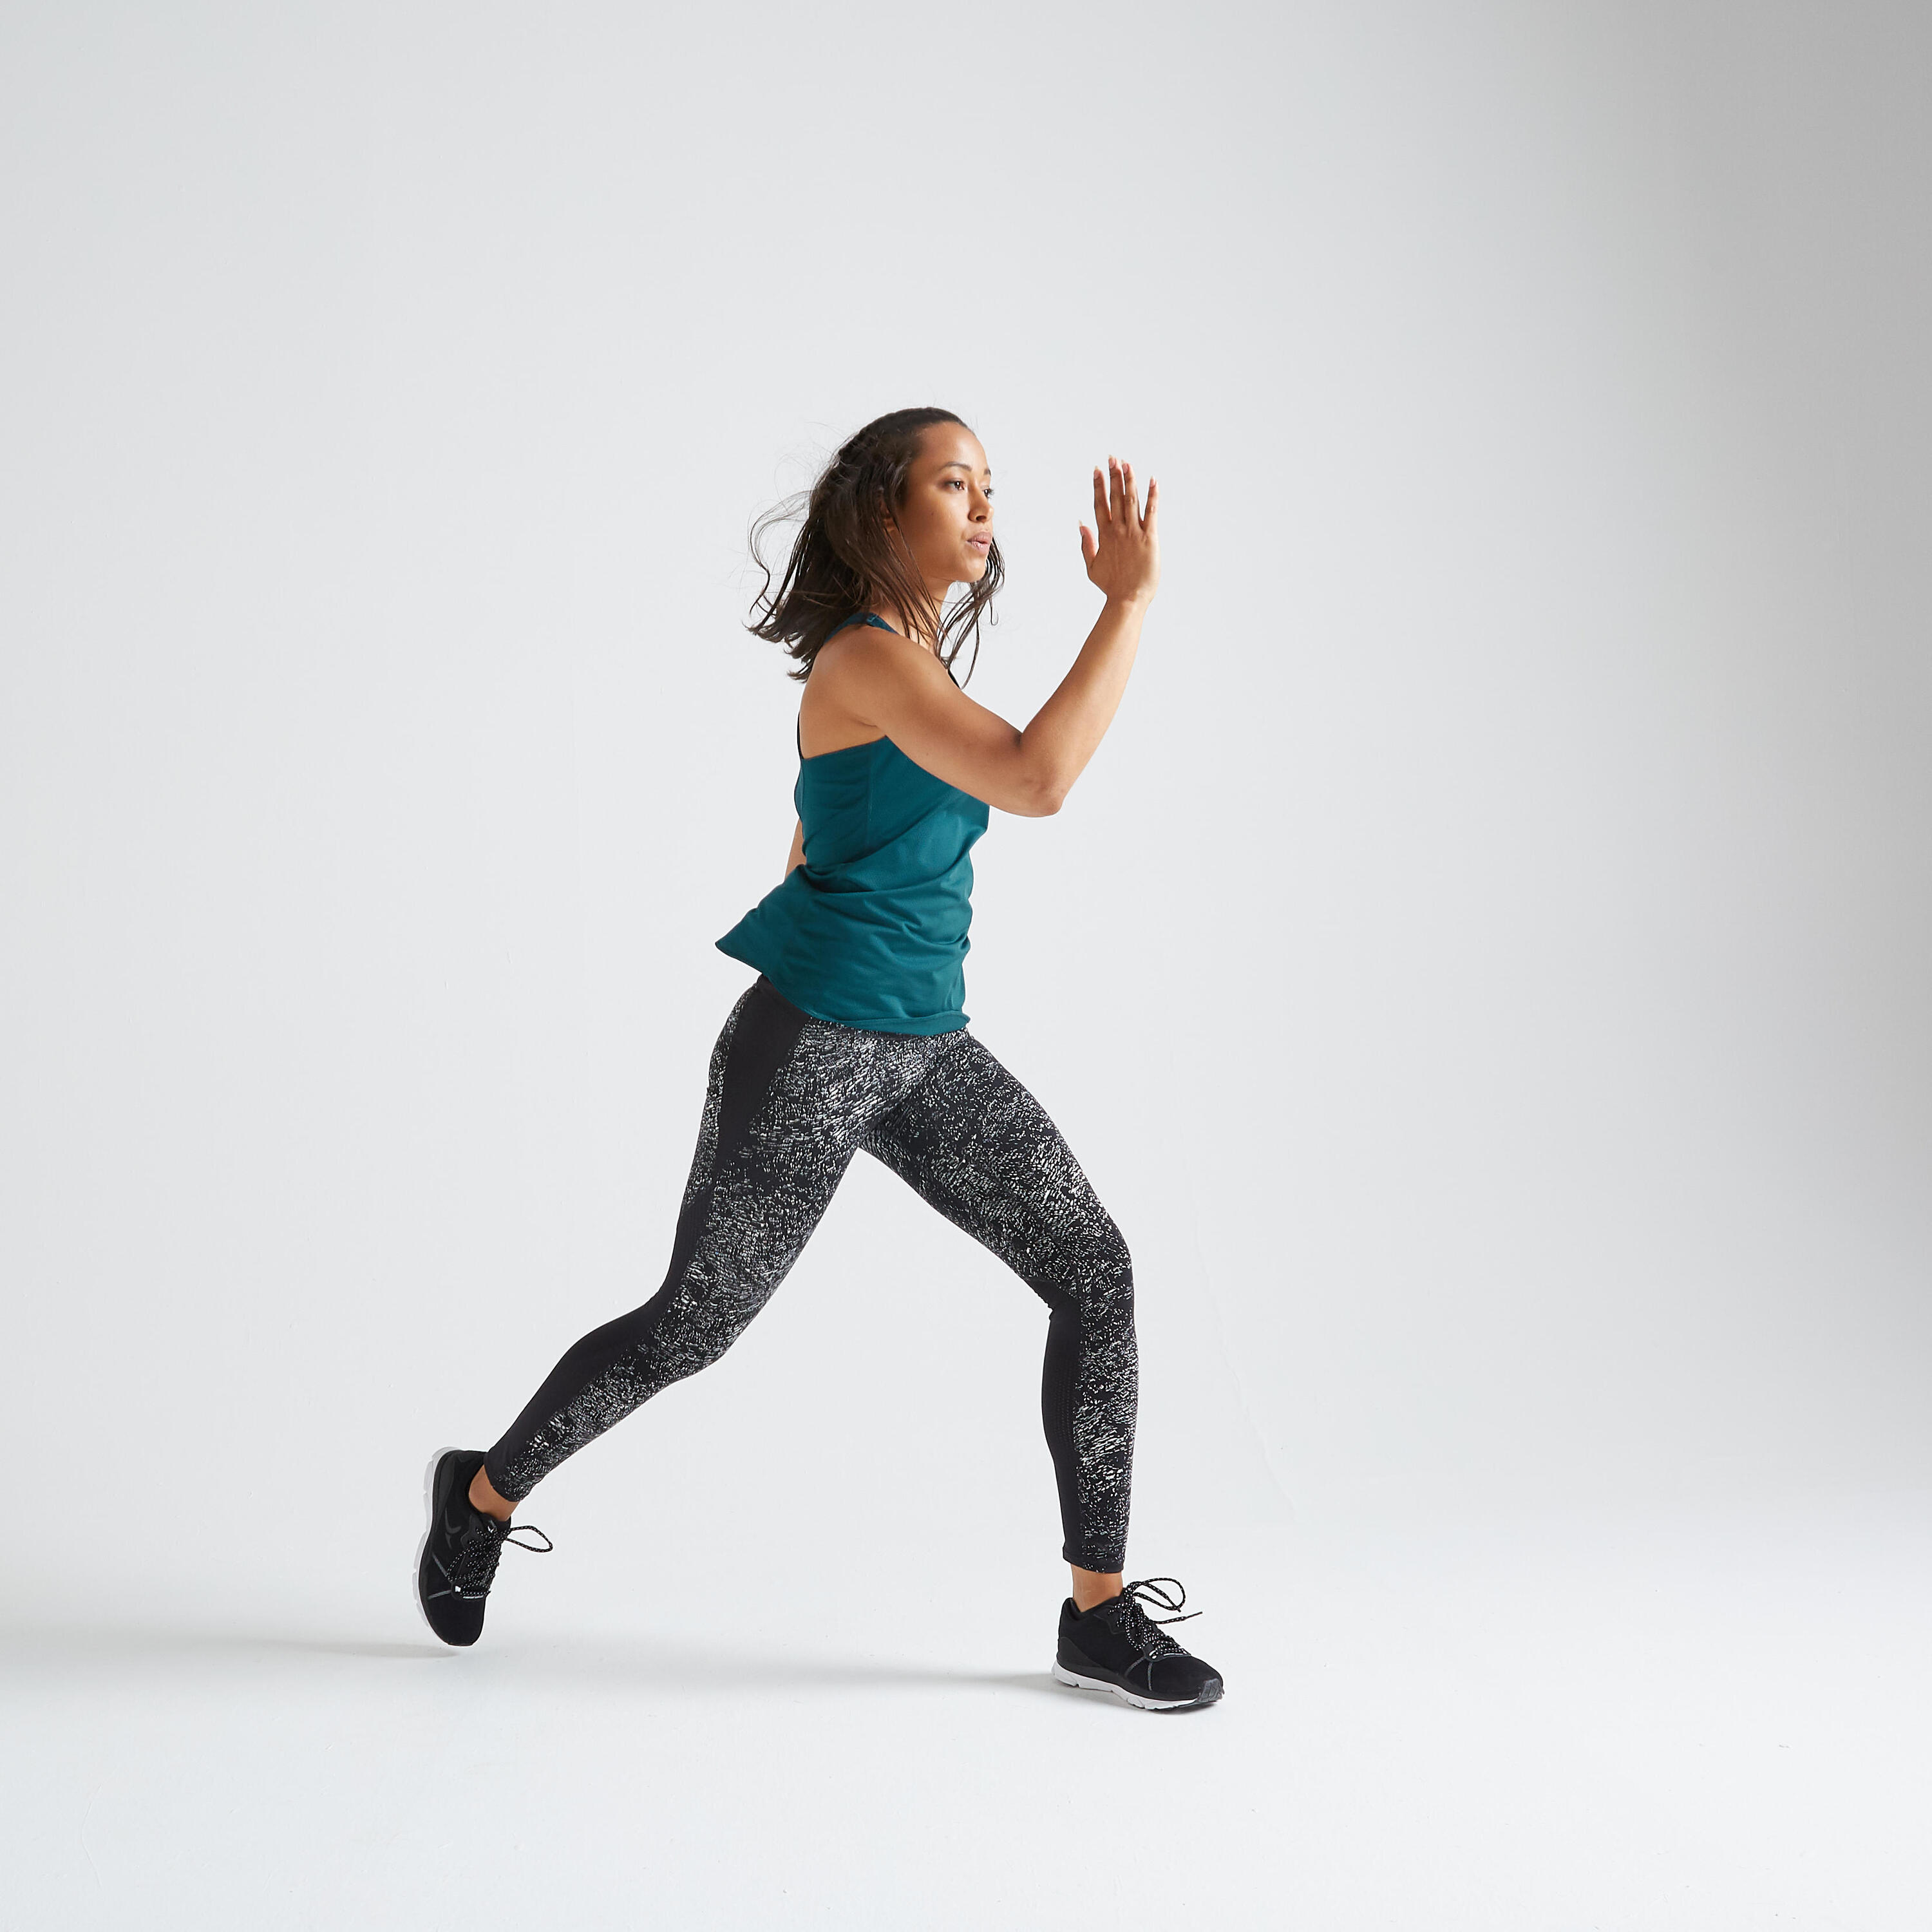 Women's shaping fitness cardio high-waisted leggings, black/white 2/5